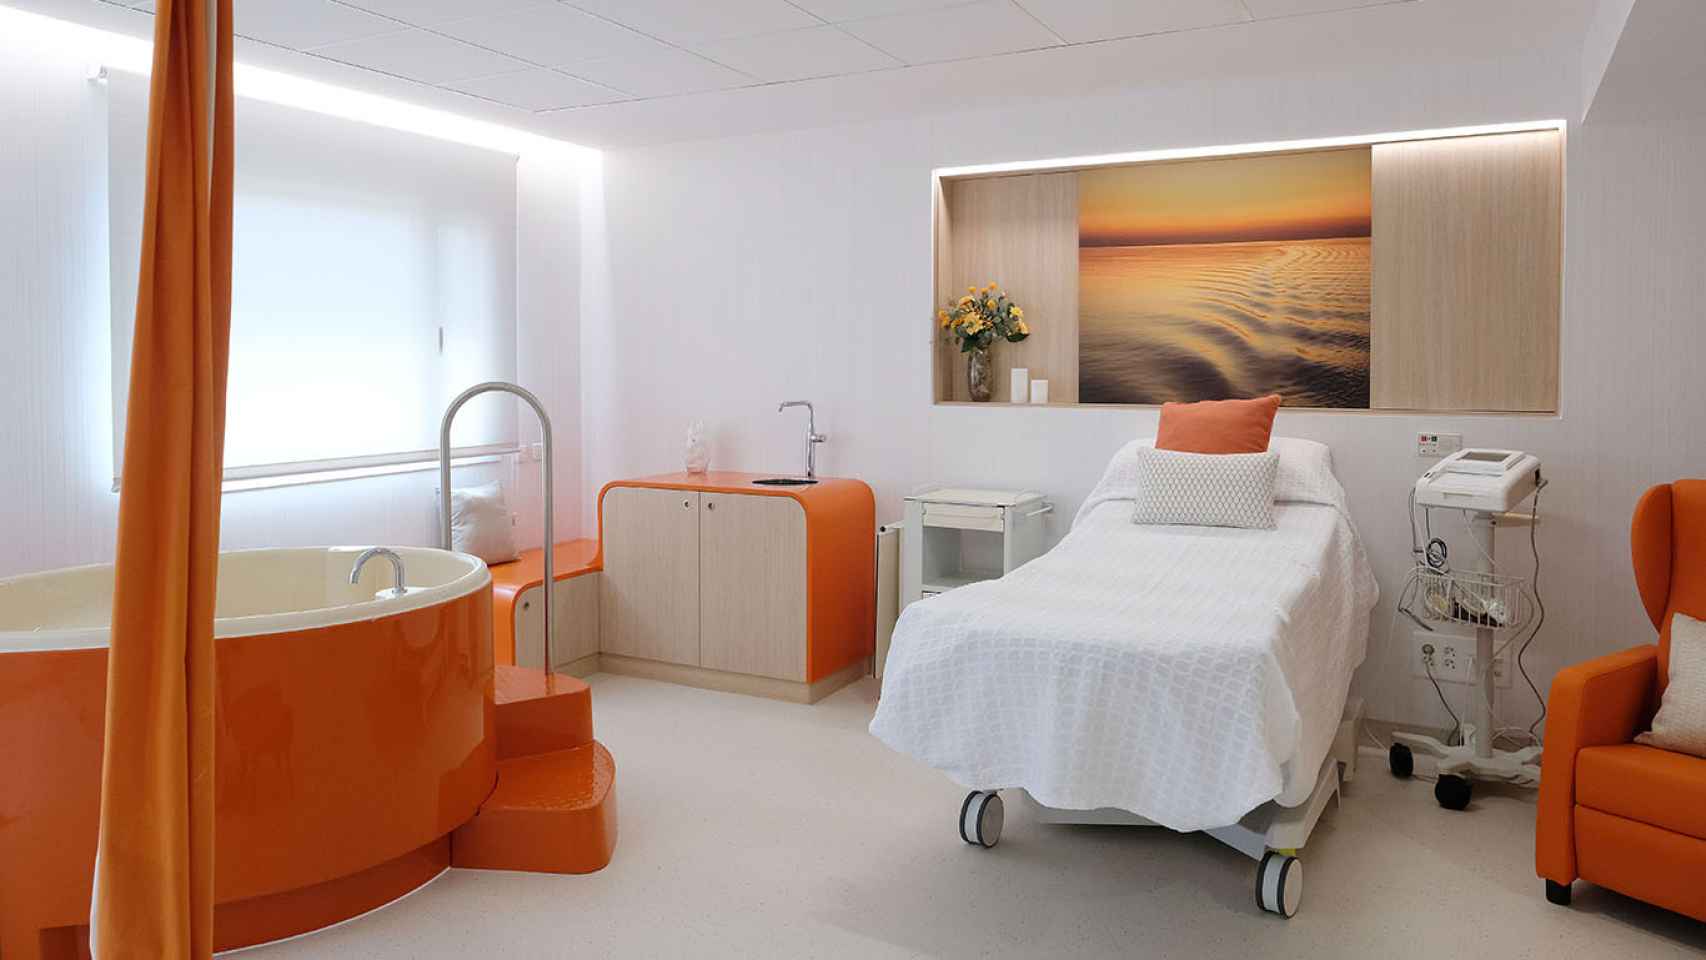 Bañera en una de las nuevas salas de parto del Hospital HM Nou Delfos de Barcelona